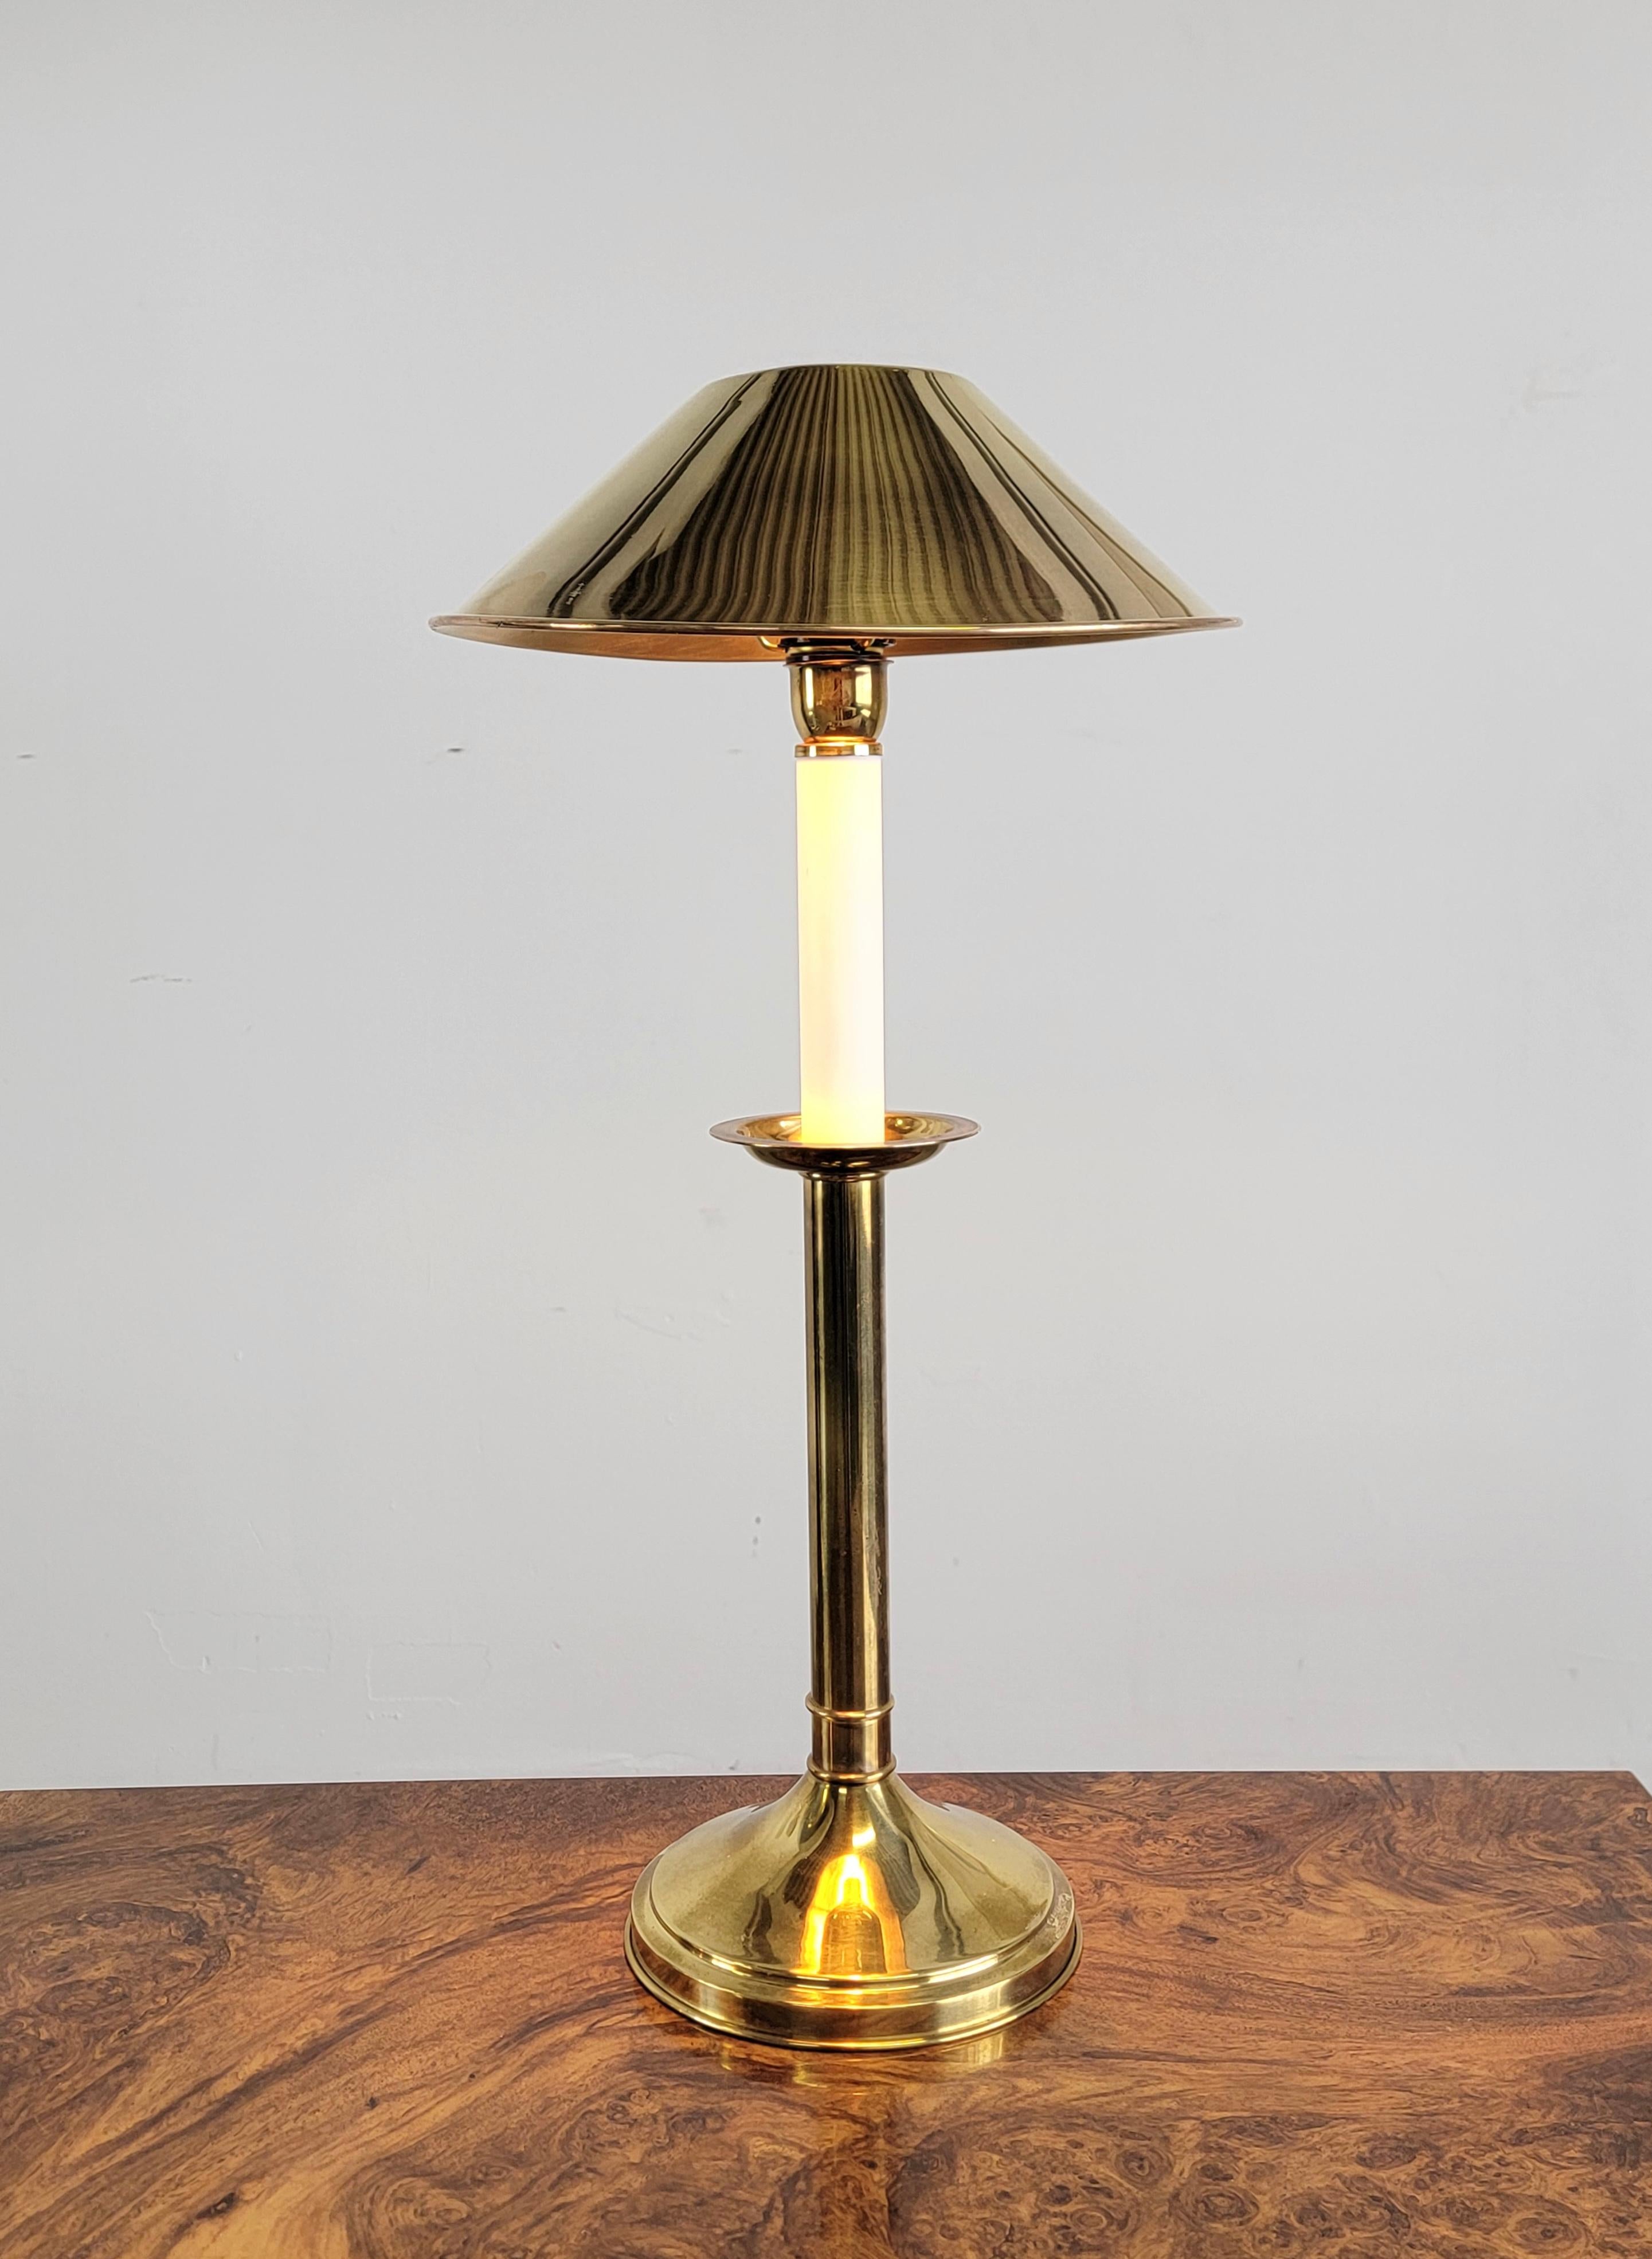 Seltene Tommaso Barbi Tischlampe aus Messing aus den 1970er Jahren. Diese atemberaubende Lampe ist aus Messing gefertigt und mit einer Lackierung versehen.  Auf der Unterseite des Sockels ist 